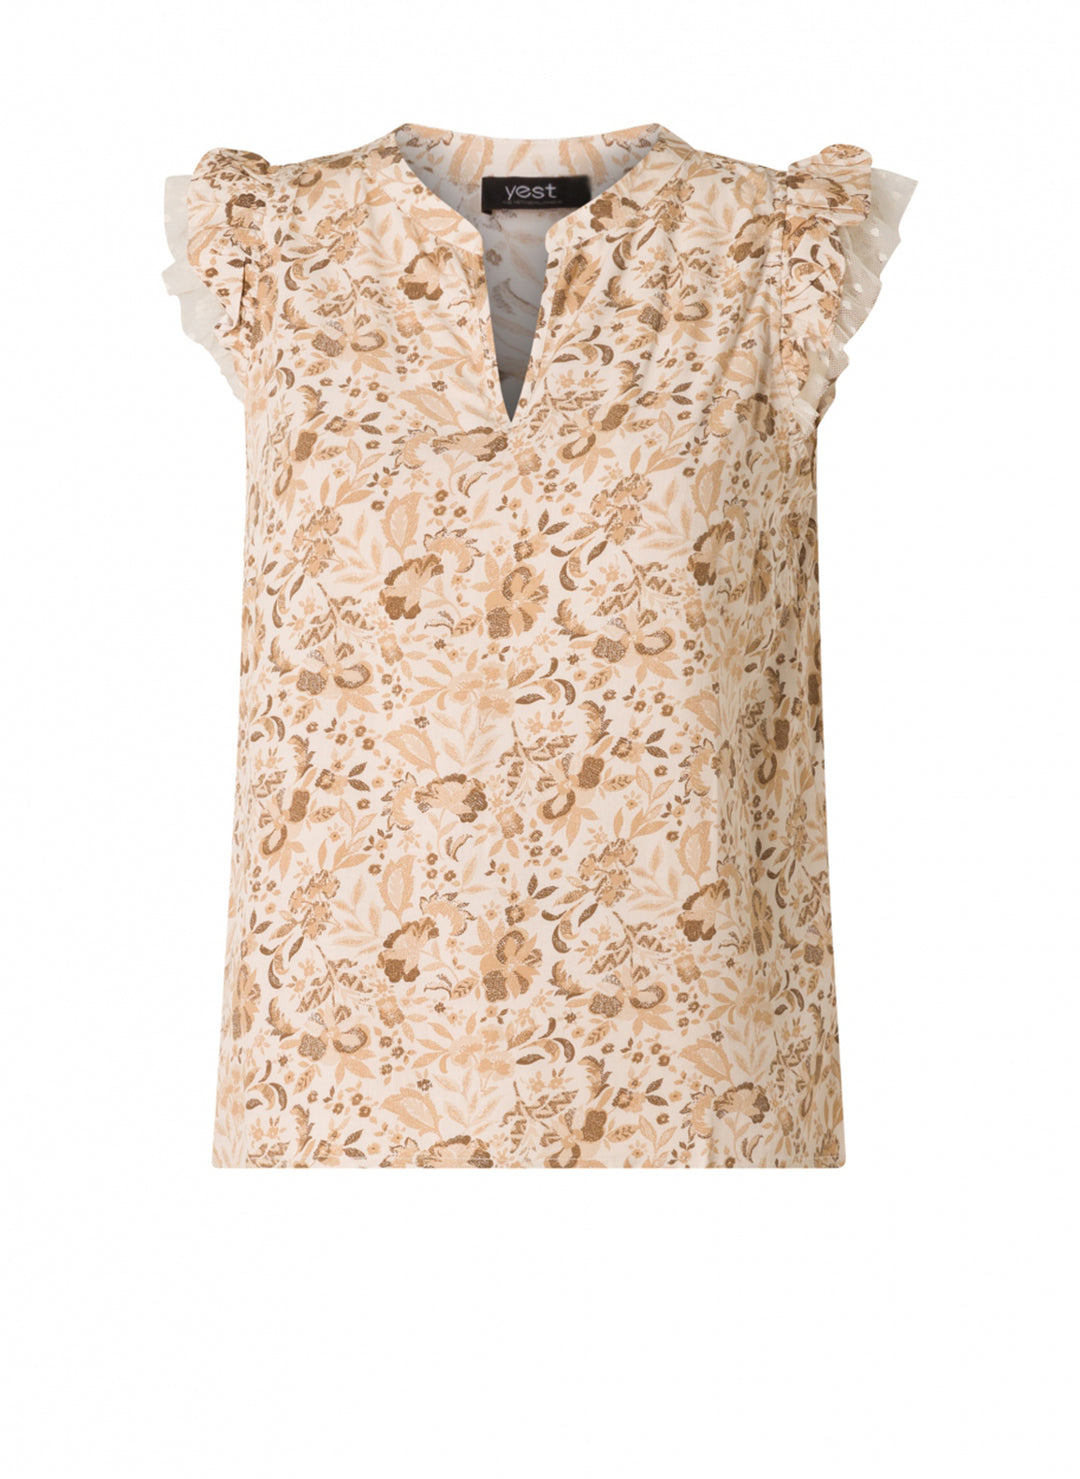 luchtige blouse met print - yesta - - grote maten - dameskleding - kledingwinkel - herent - leuven